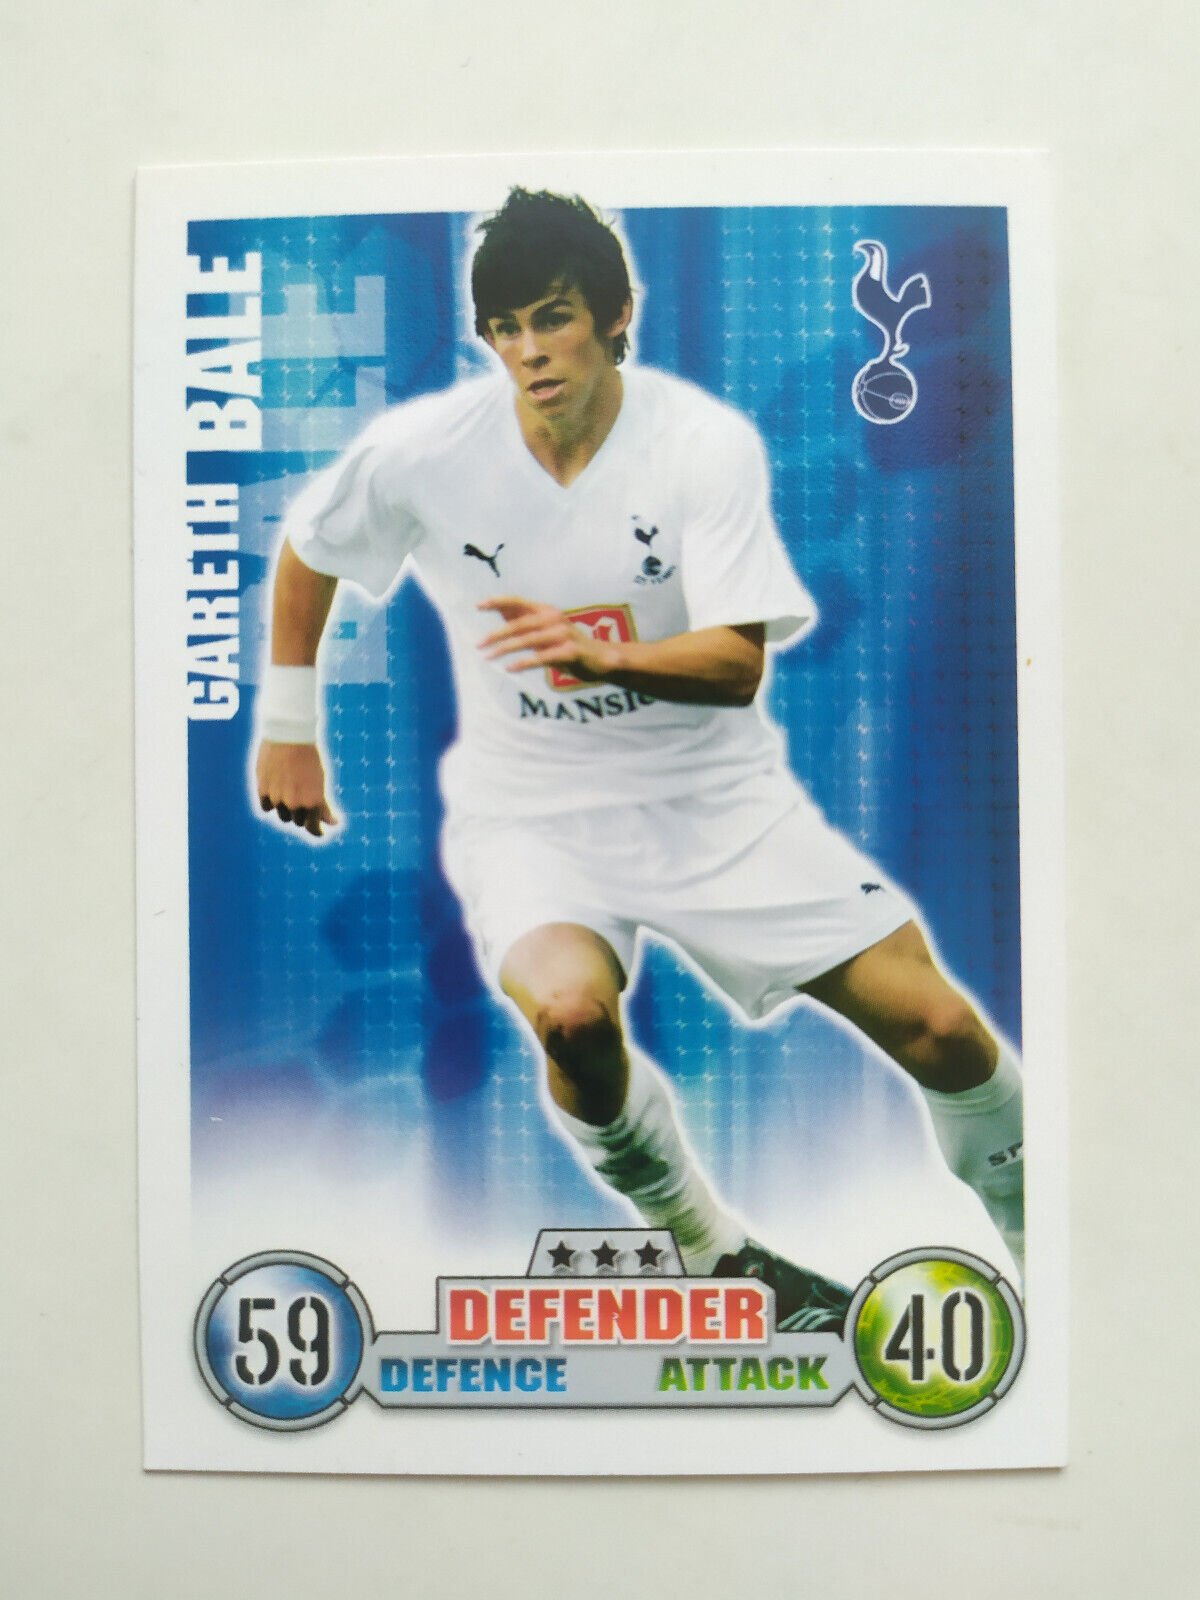 Match Attax Topps Trading Card Premier League 2007 / 2008 Gareth Bale